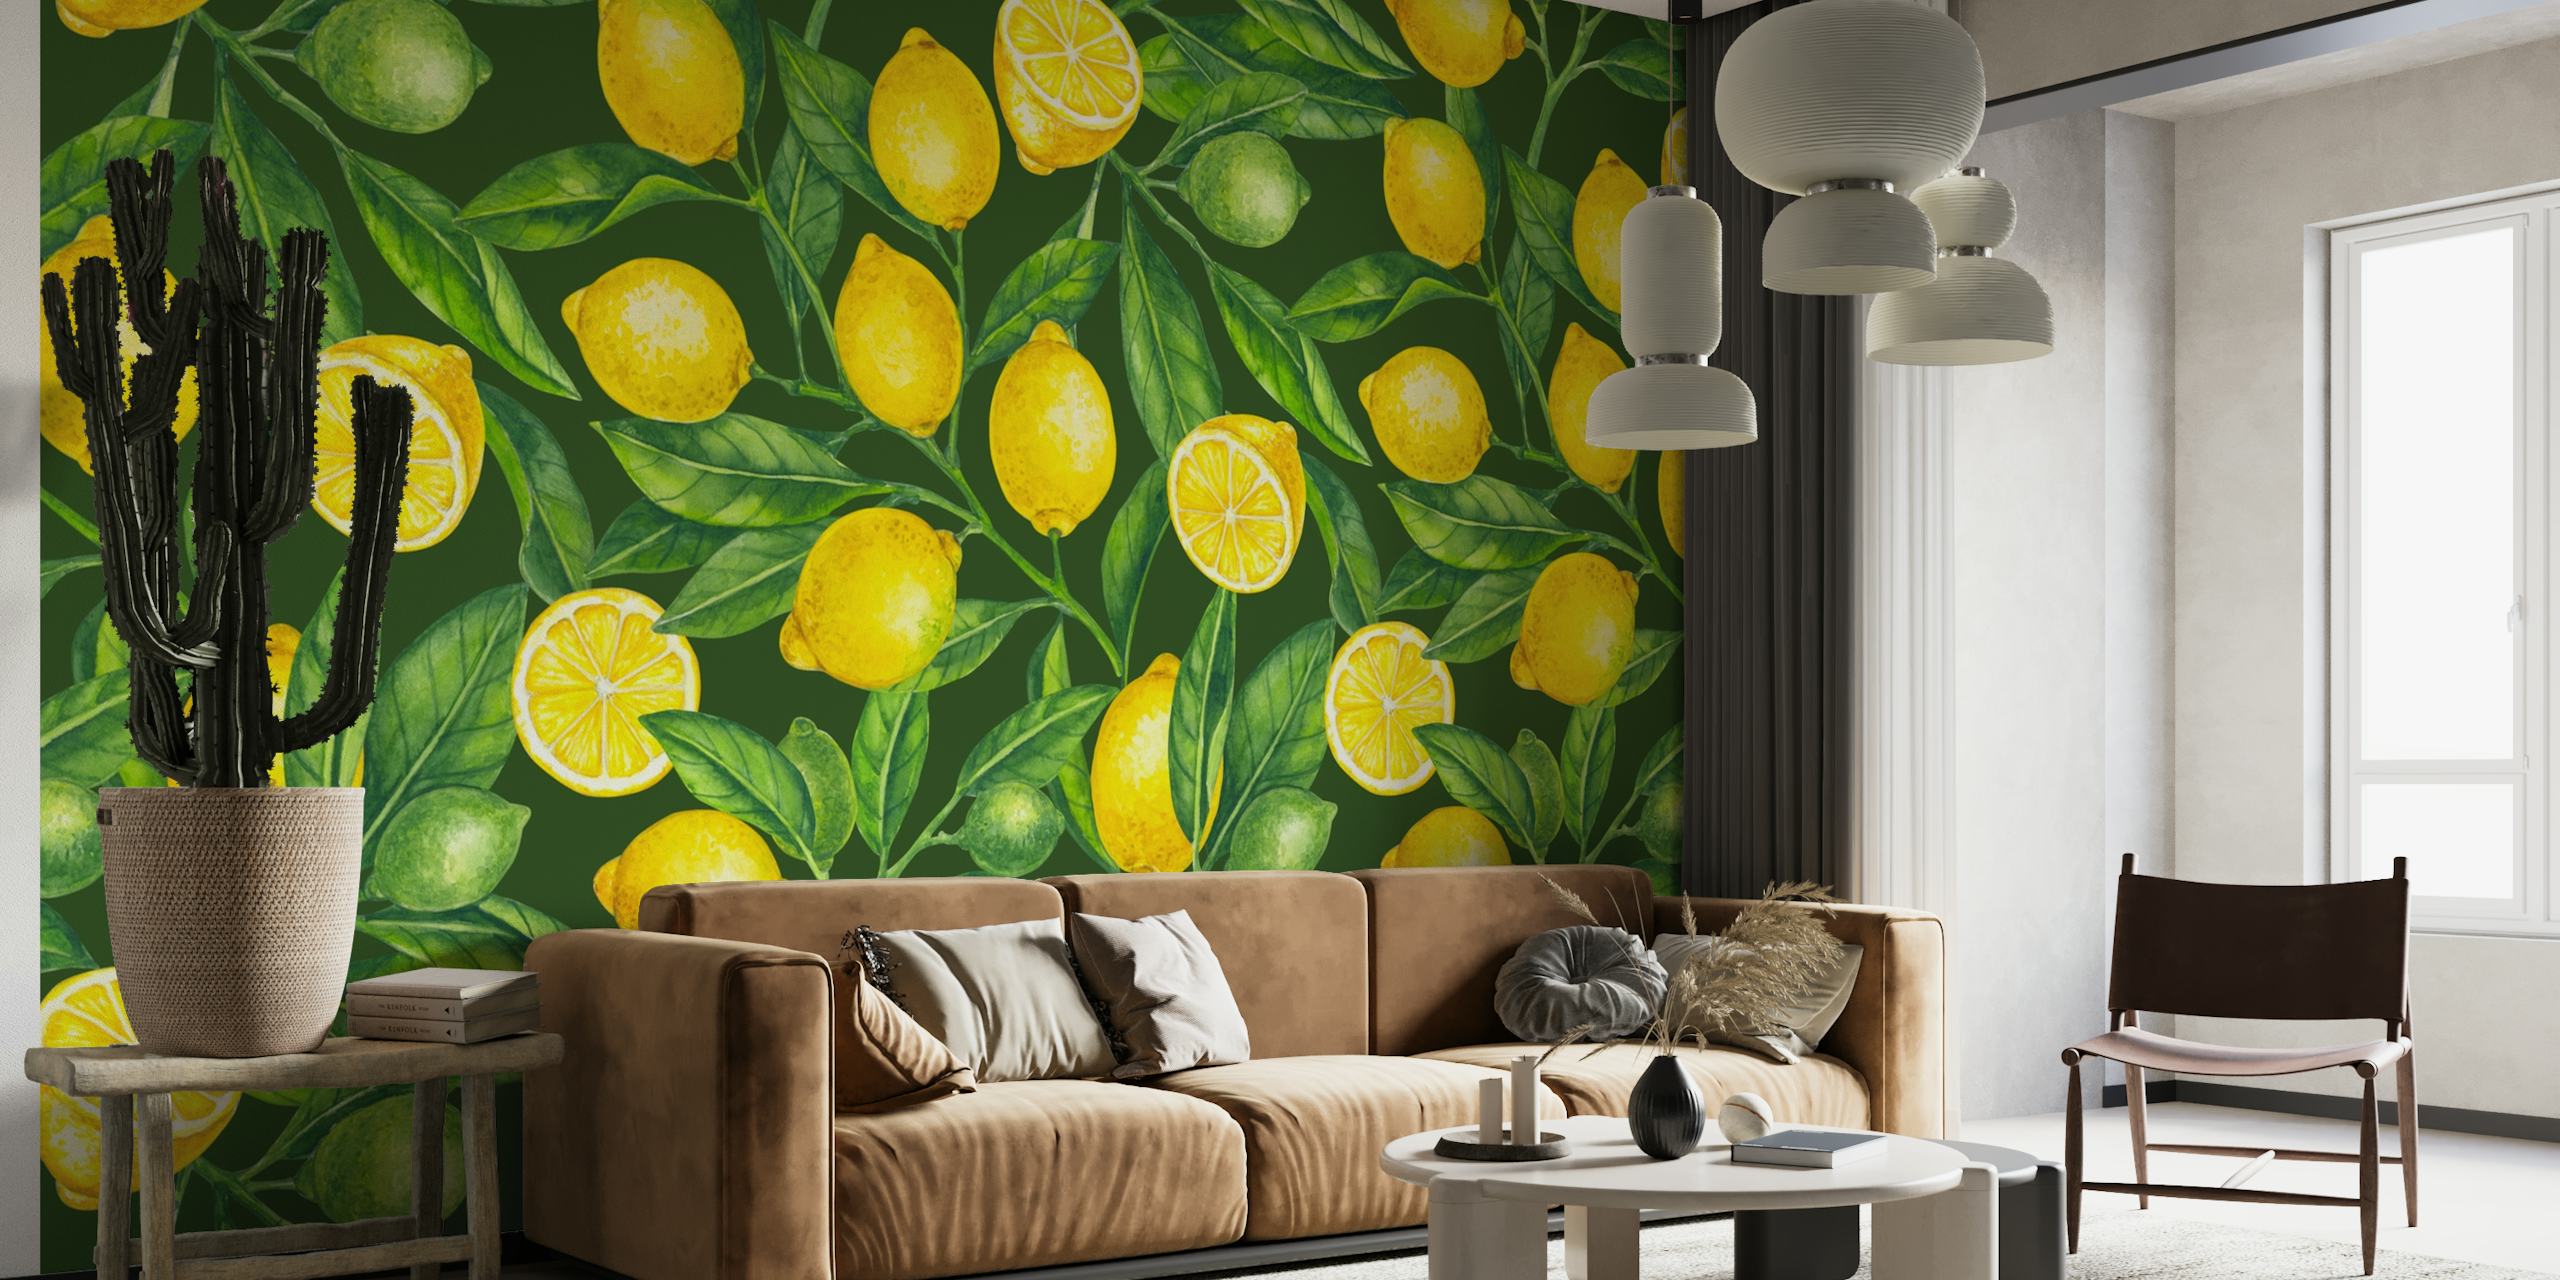 Friske citrongrene vægmaleri med frodige grønne blade og lysegult citronmønster